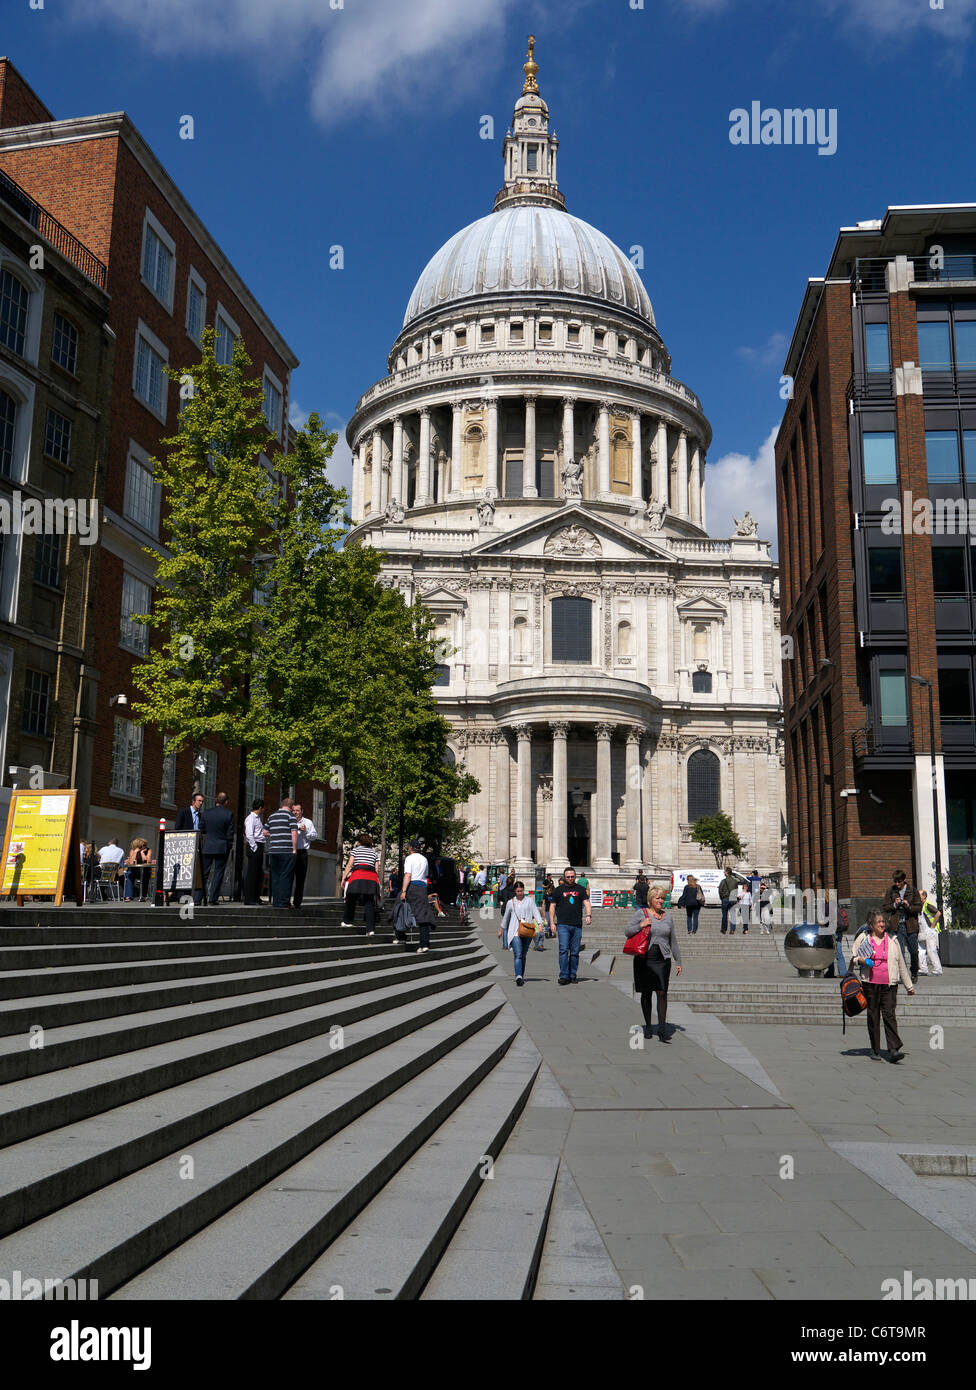 La Cathédrale St Paul à Londres Angleterre Royaume-uni. Banque D'Images